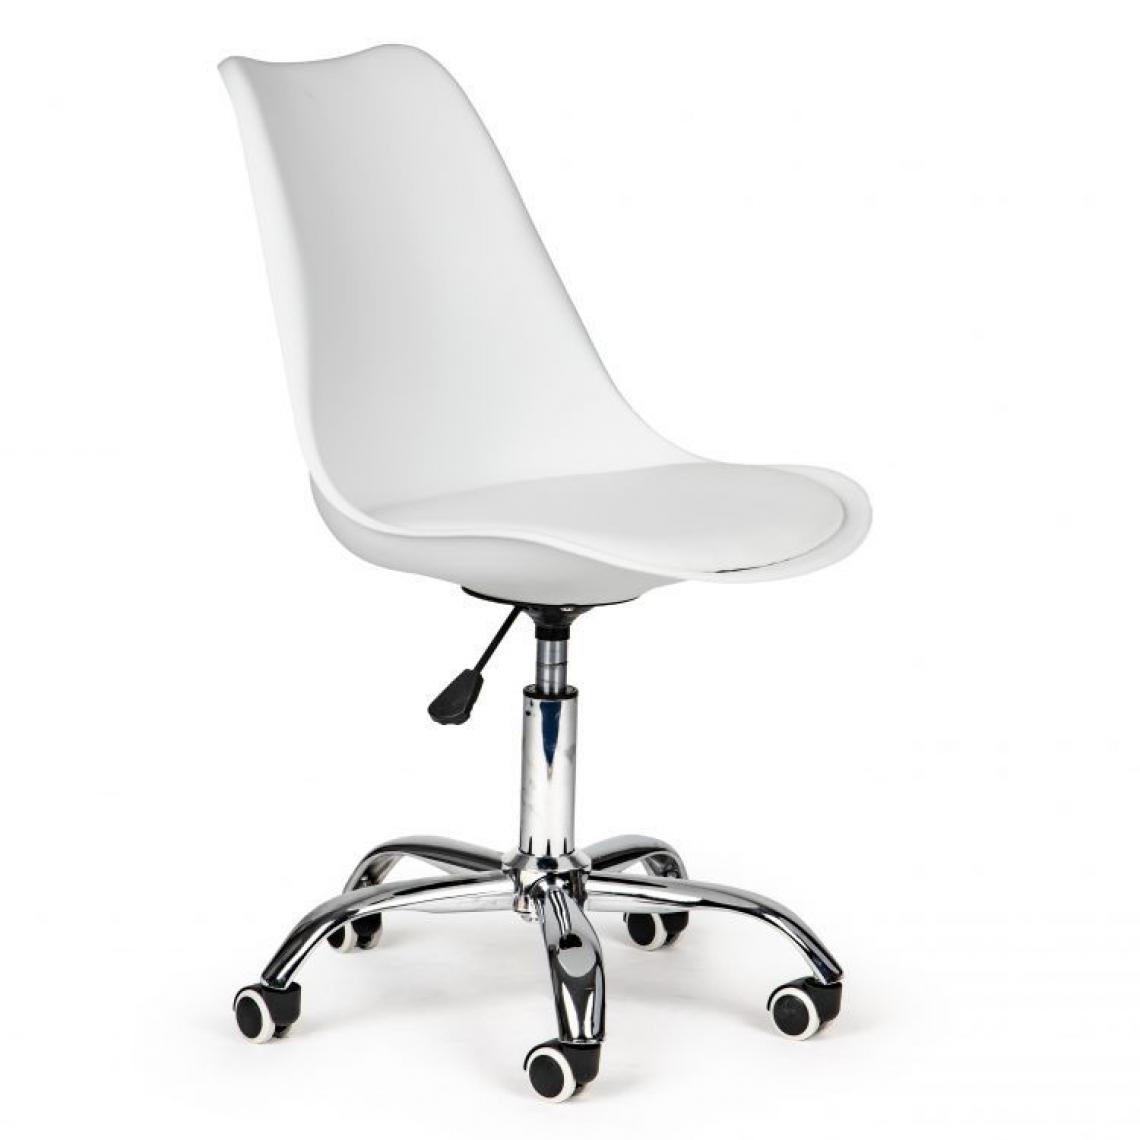 Hucoco - MSTORE - Chaise de style moderne pour les bureaux et les cabinets - 82-94 x 49 x 42 - Réglable - Chaise pivotante - Blanc - Chaises